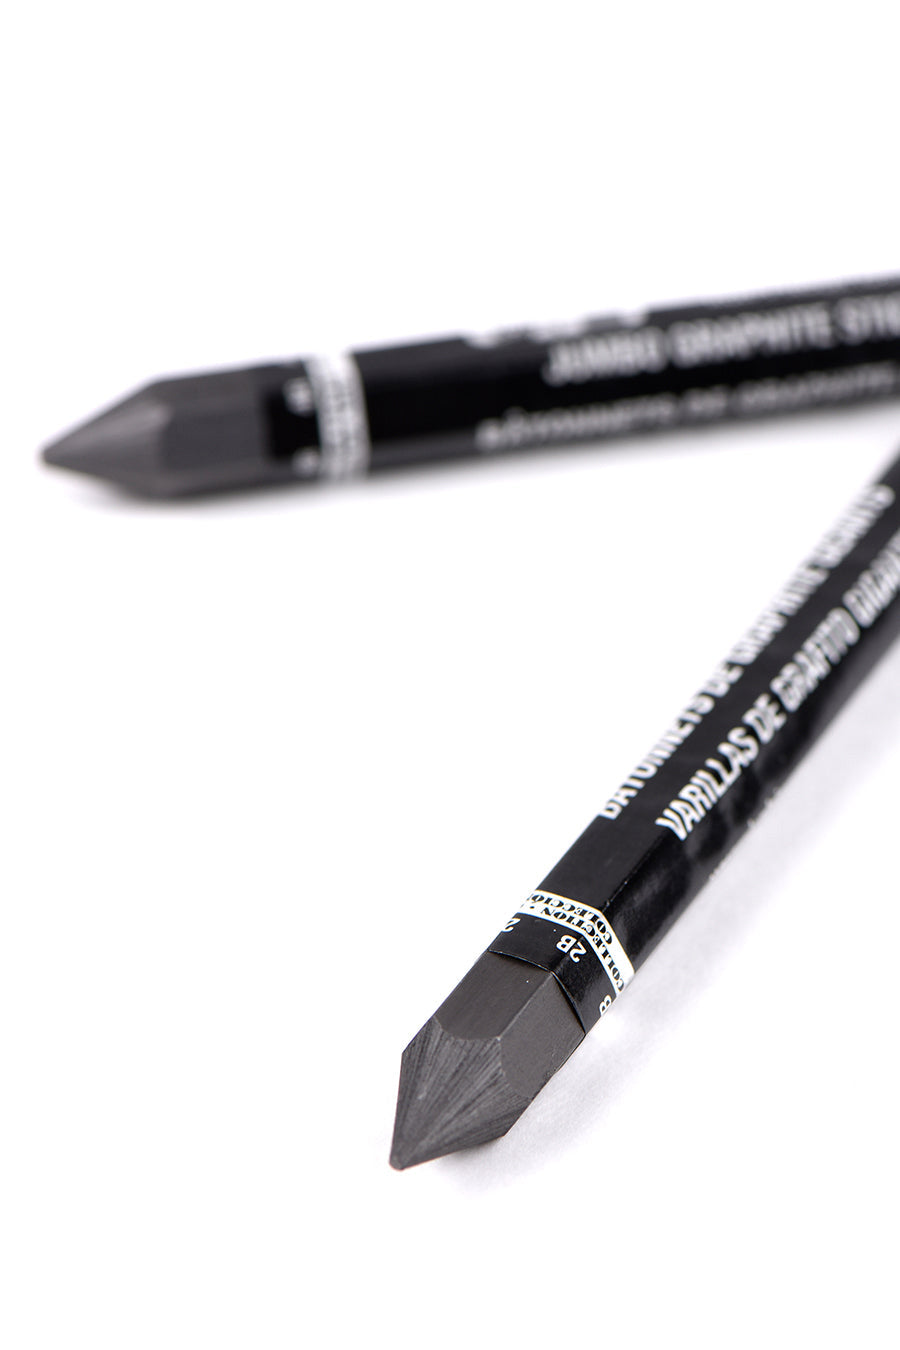 Koh-I-Noor® Progresso® Woodless Graphite Pencil Sets